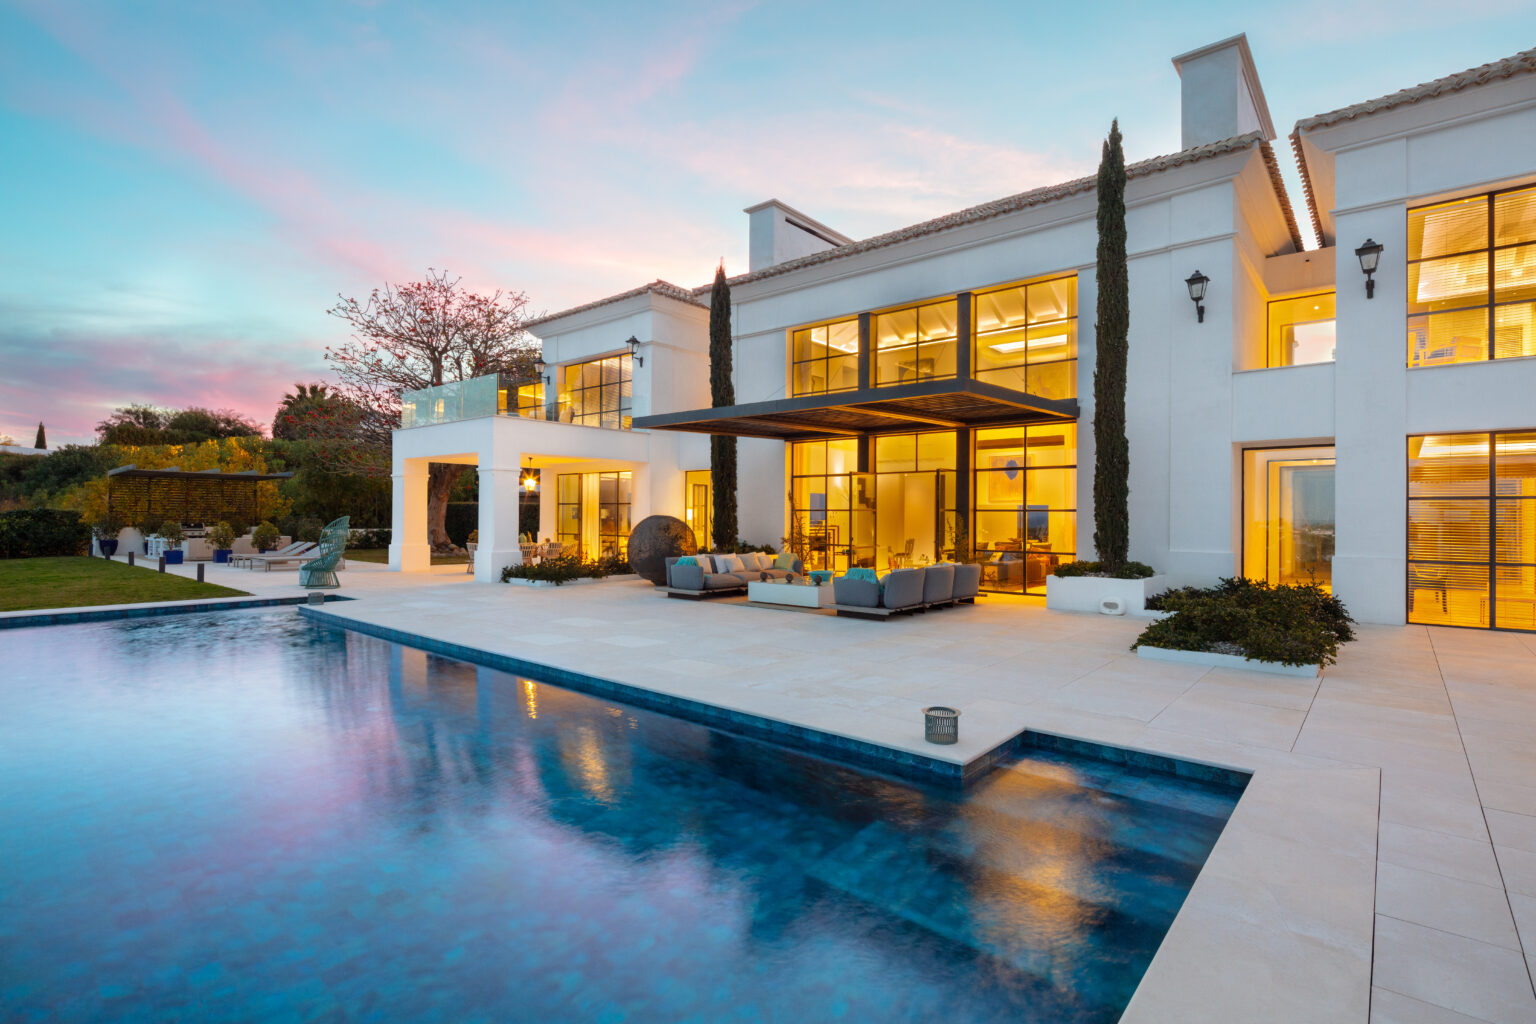 Los Flamingos 88 – Sophisticated Modern Villa